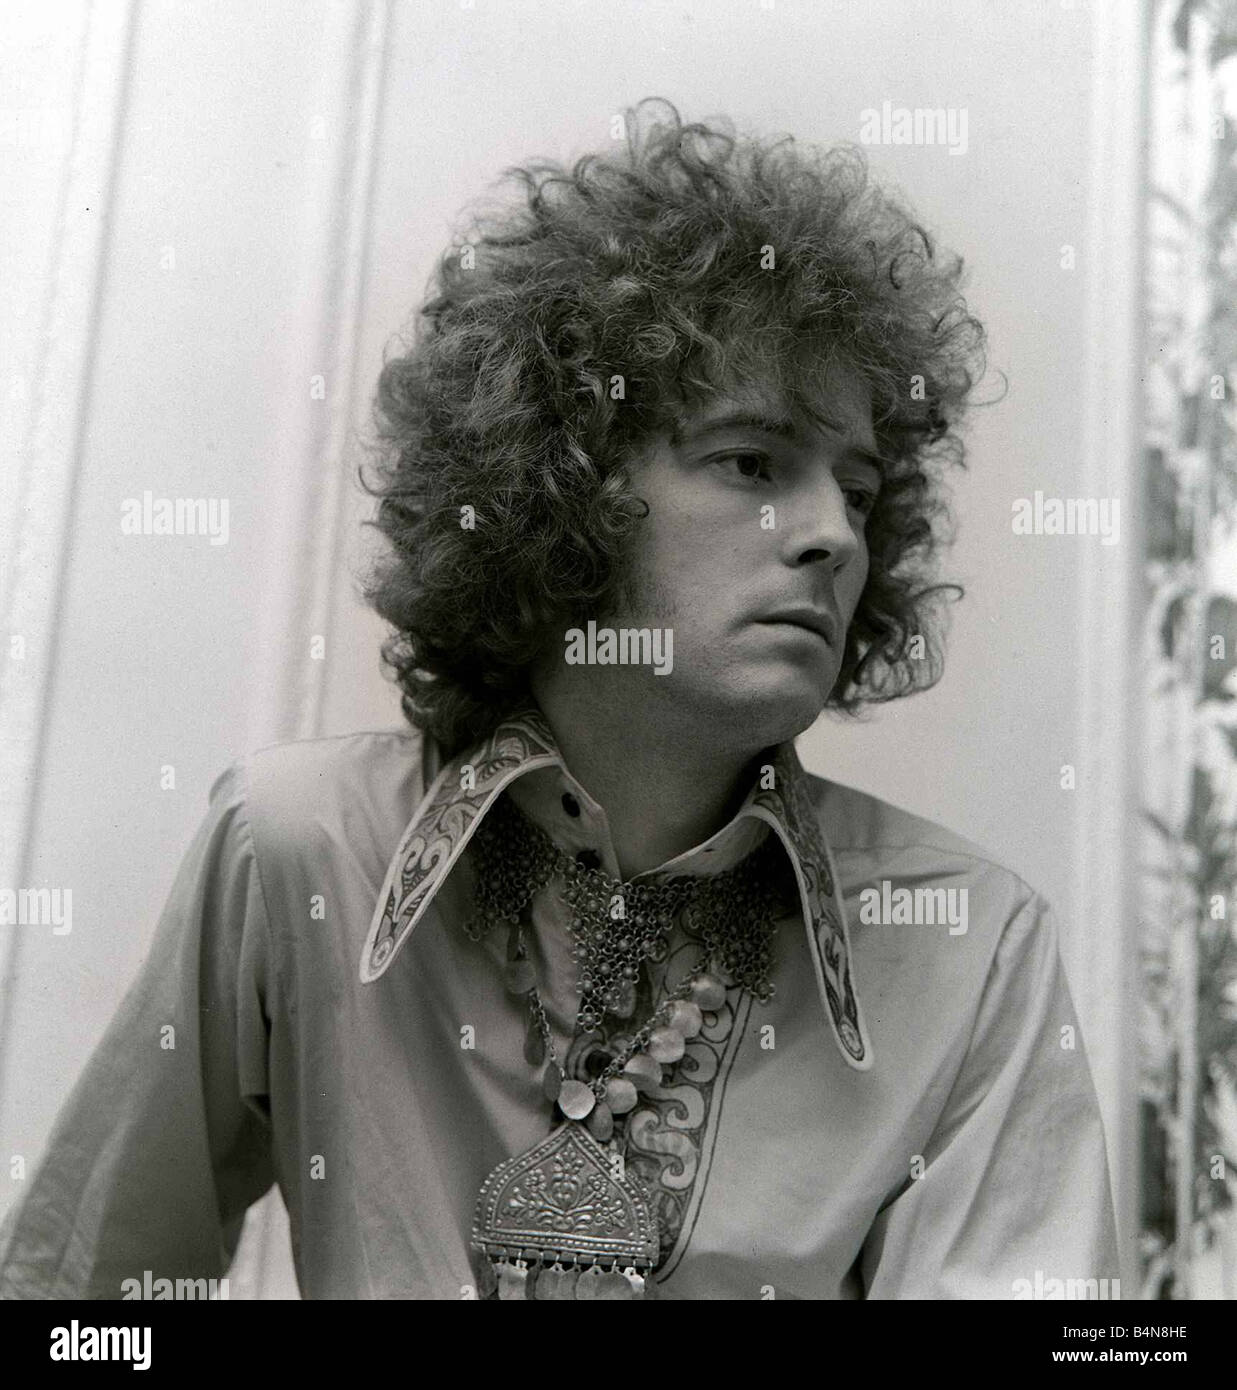 Eric Clapton Giugno 1967 della crema gruppo pop mostra fuori i suoi capelli ricci creata per lui da un West End parruchiere da donna 1967 Foto Stock